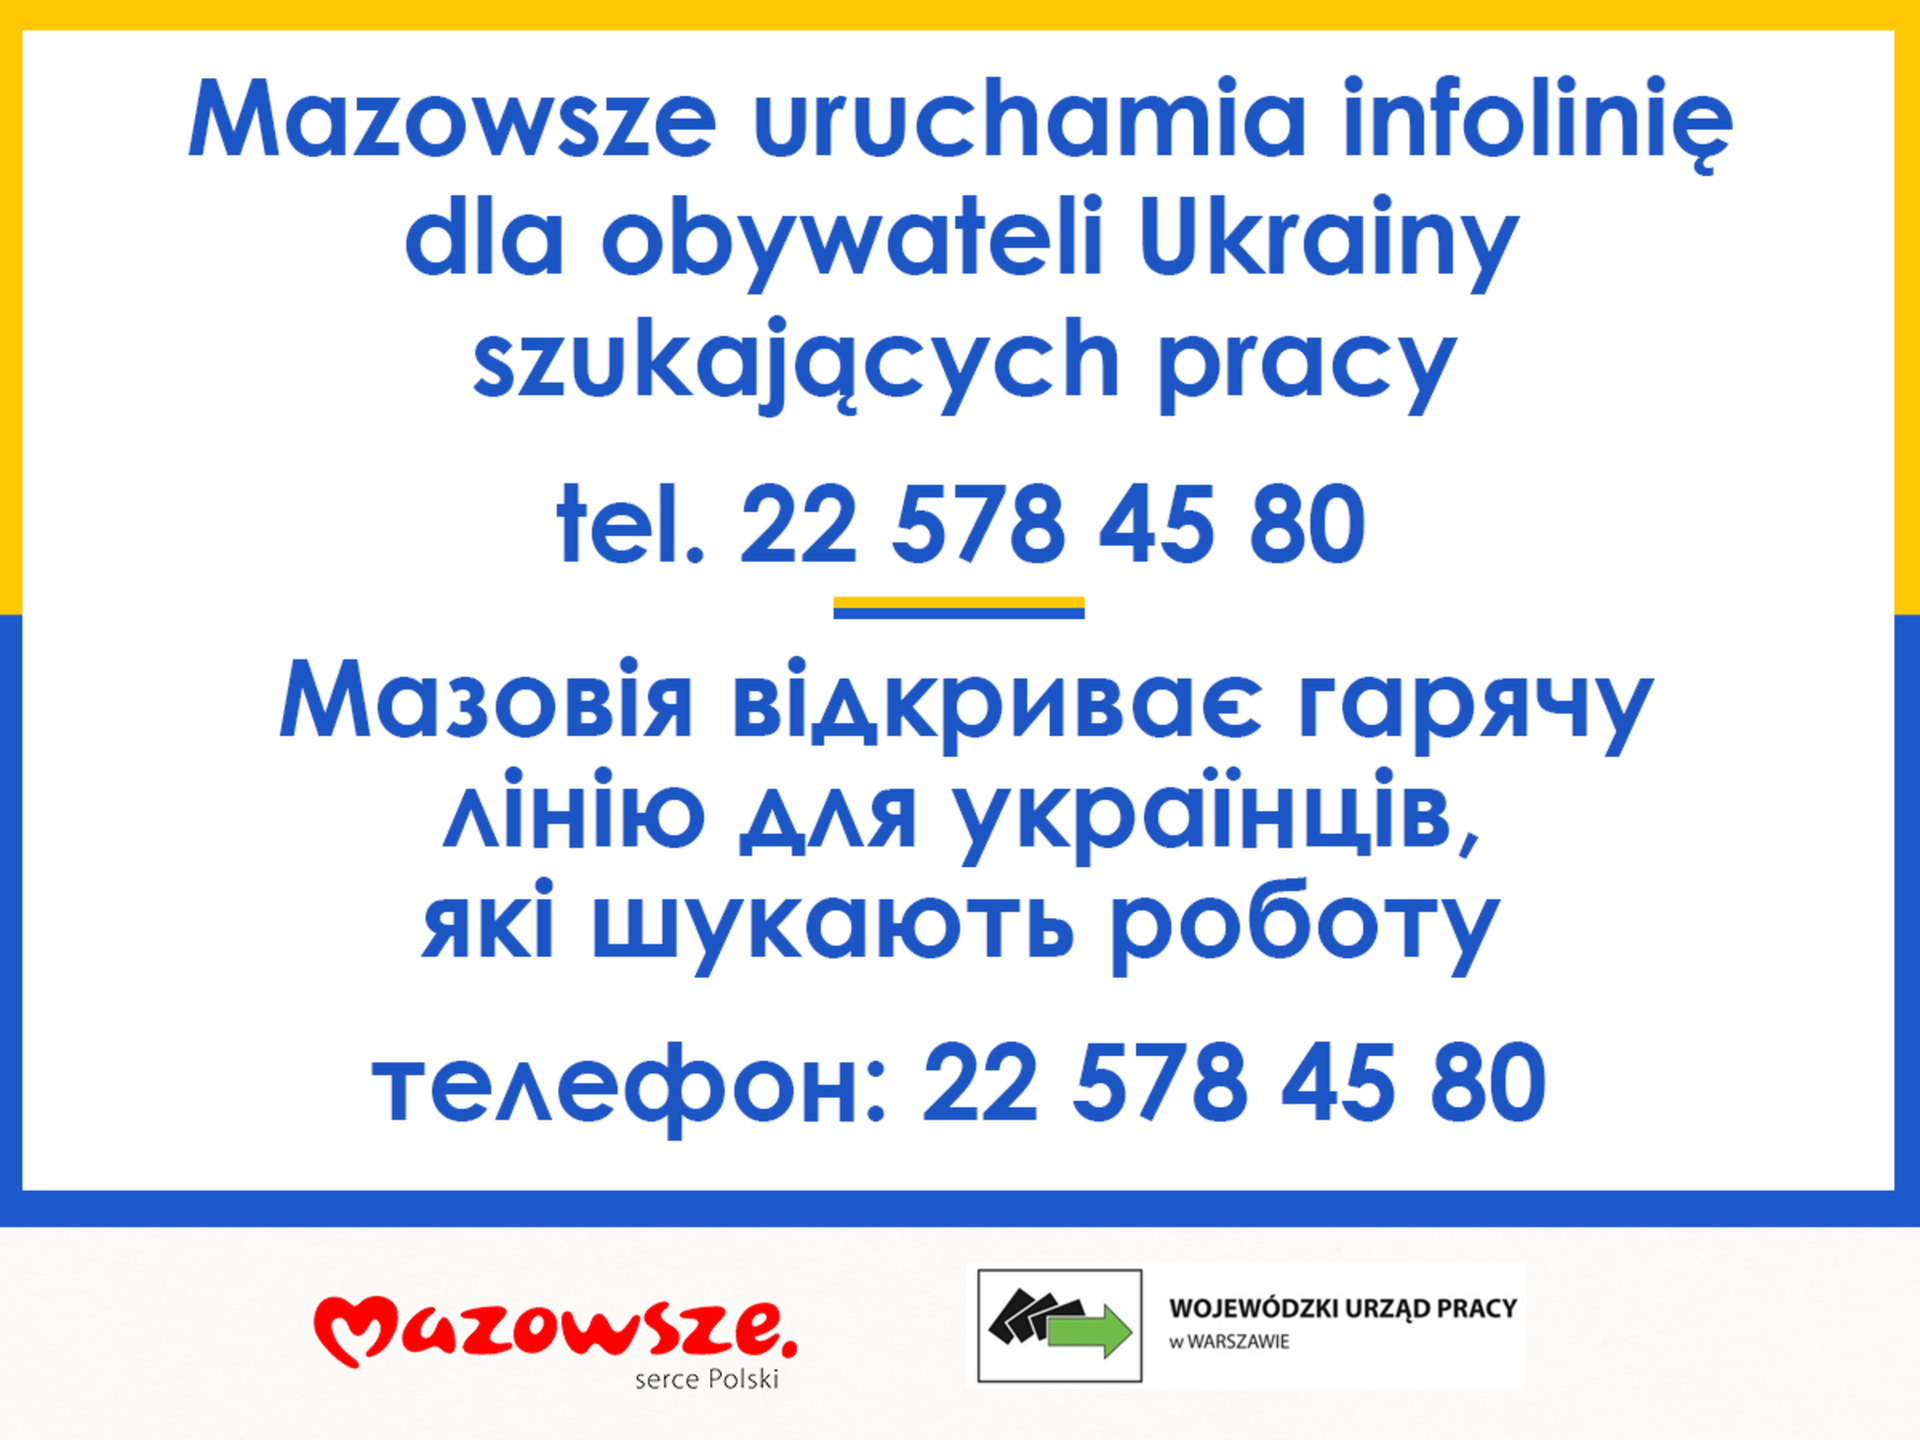 Mazowsze uruchamia infolinię dla obywateli Ukrainy poszukujących pracy